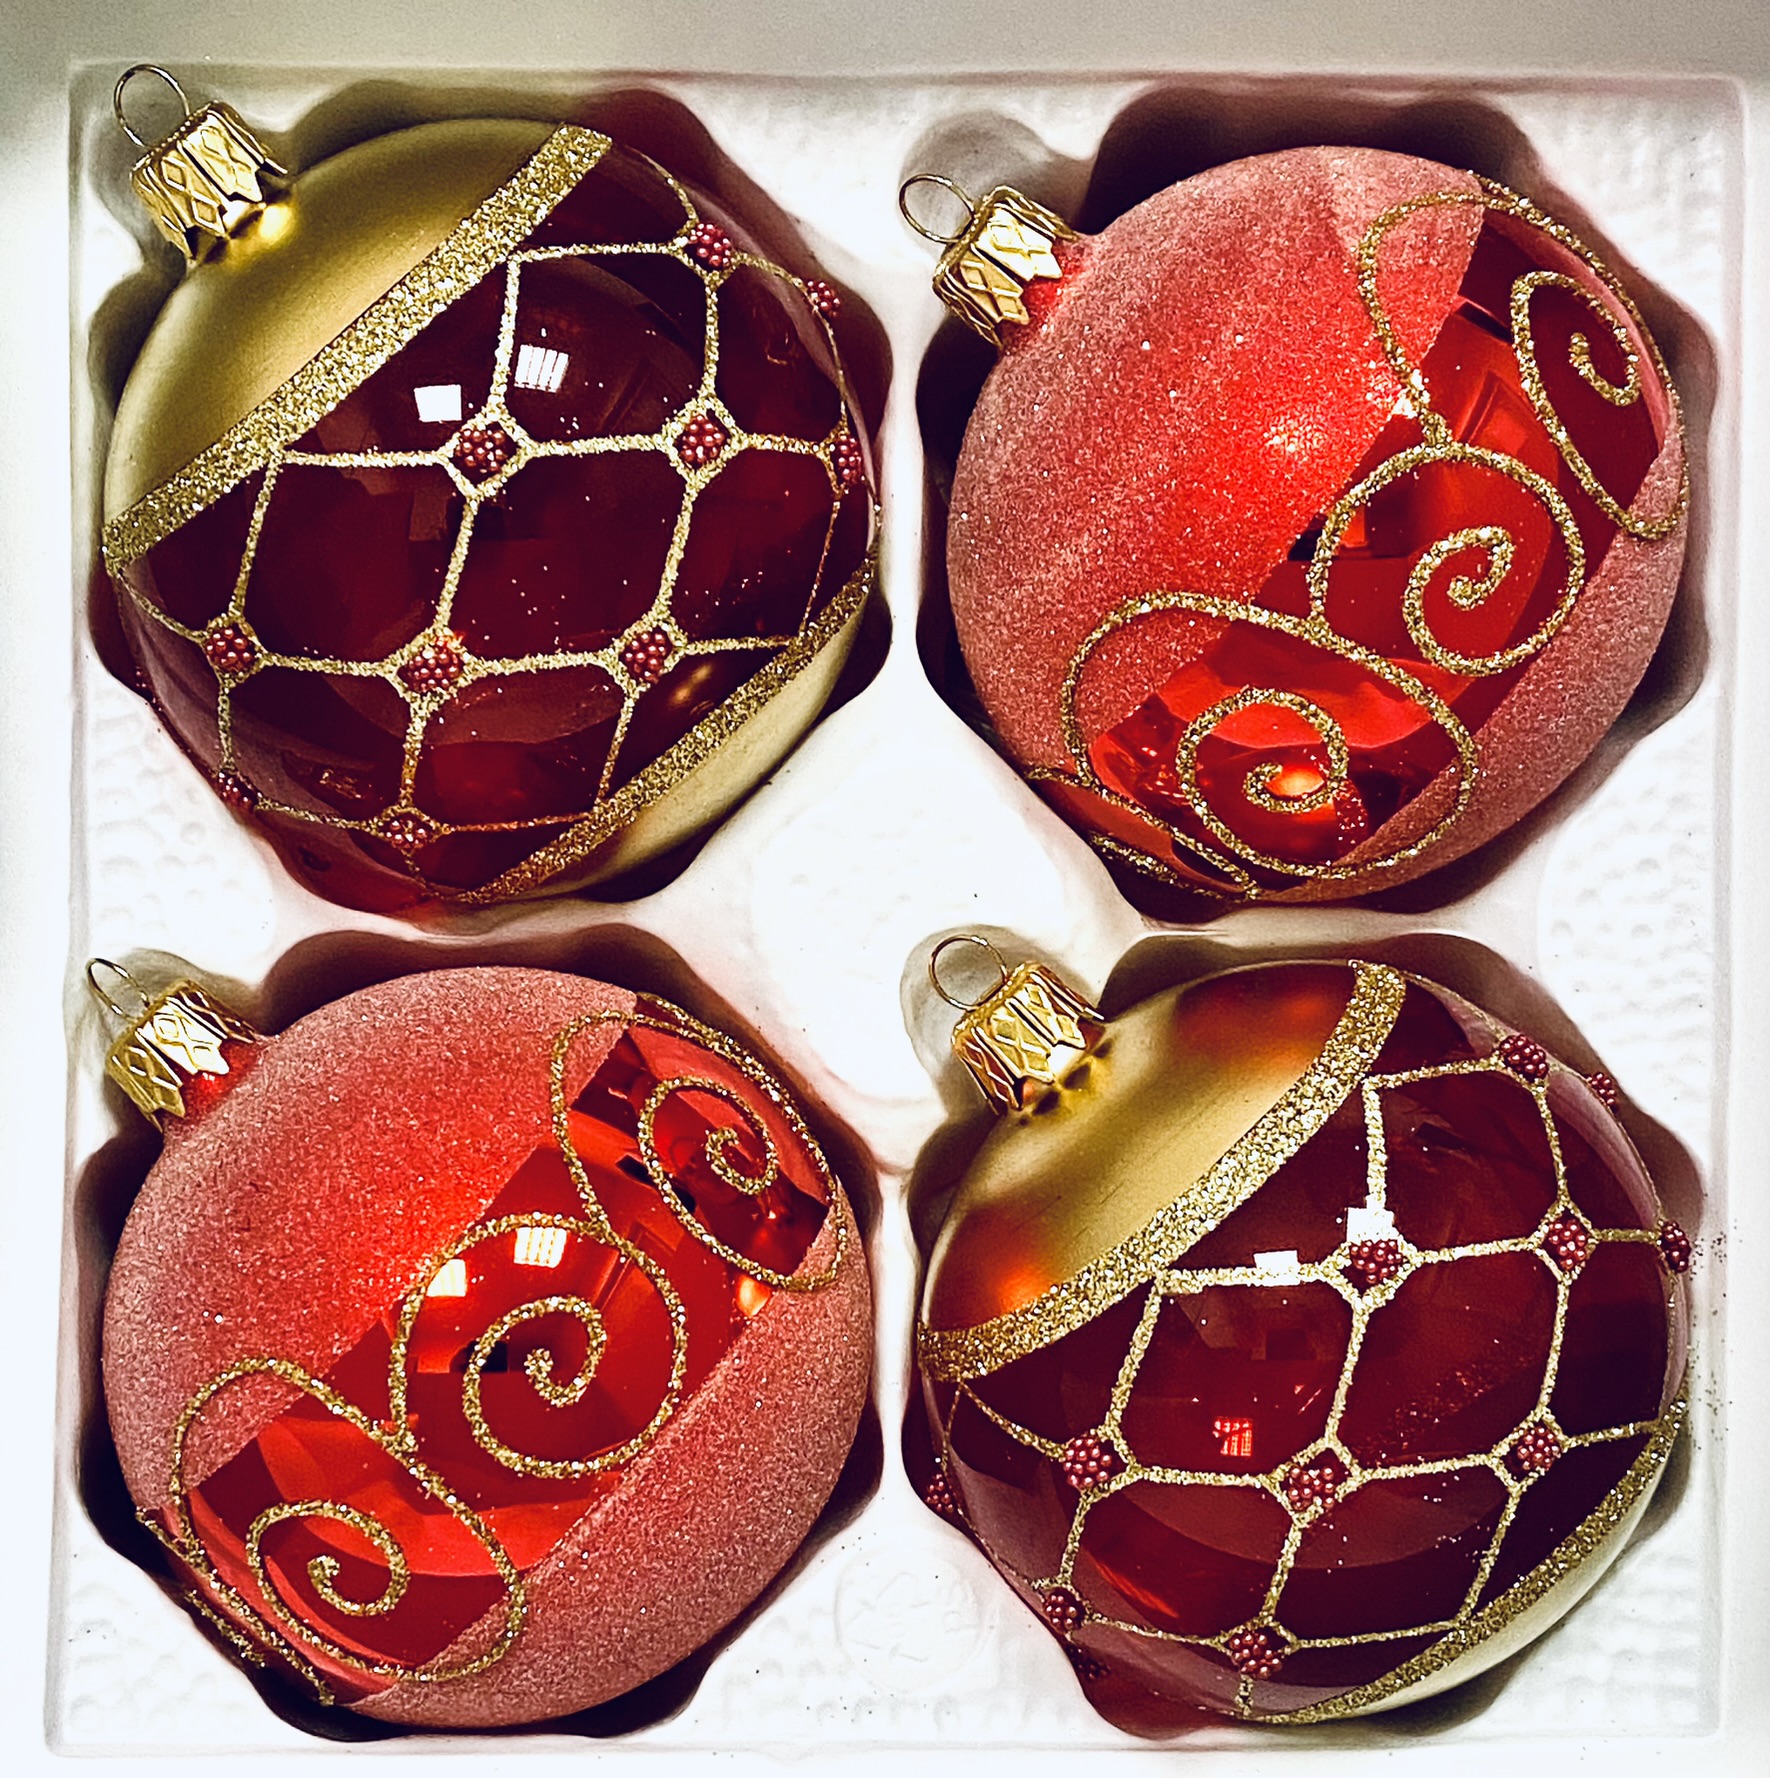 IRISA Královská nokturna: Skleněná vánoční Sada - Červené poklady se zlatým dekorem (Velikost 8 cm, 4 ks) Balení: 4 ks, Barva: červená, Velikost: 8 cm